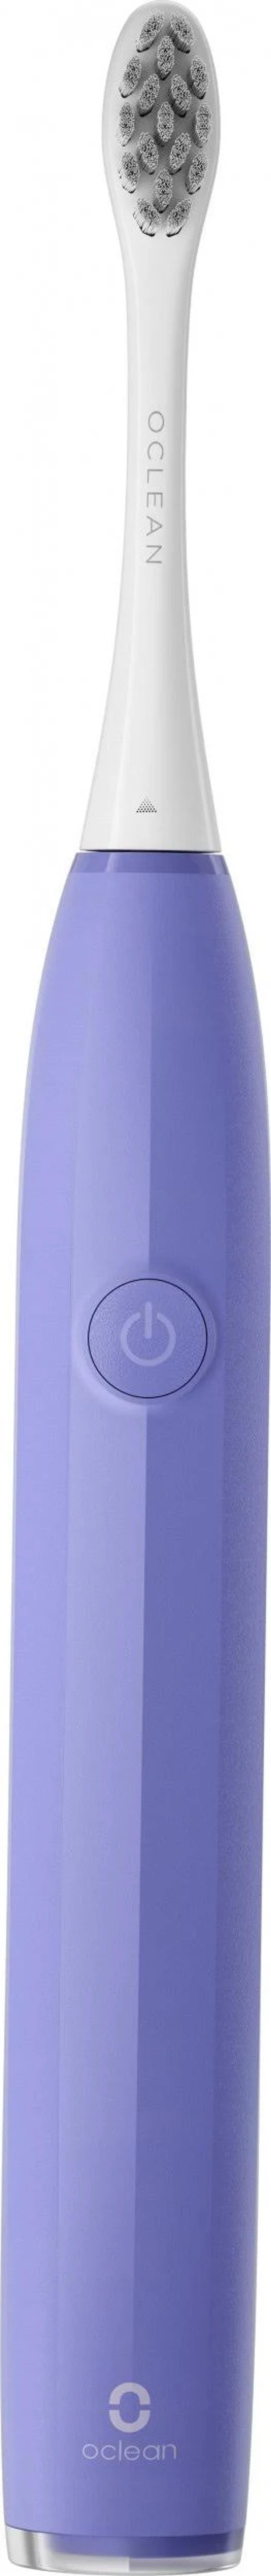 OCLEAN Endurance Purple Elektrische Zahnbürste Violett